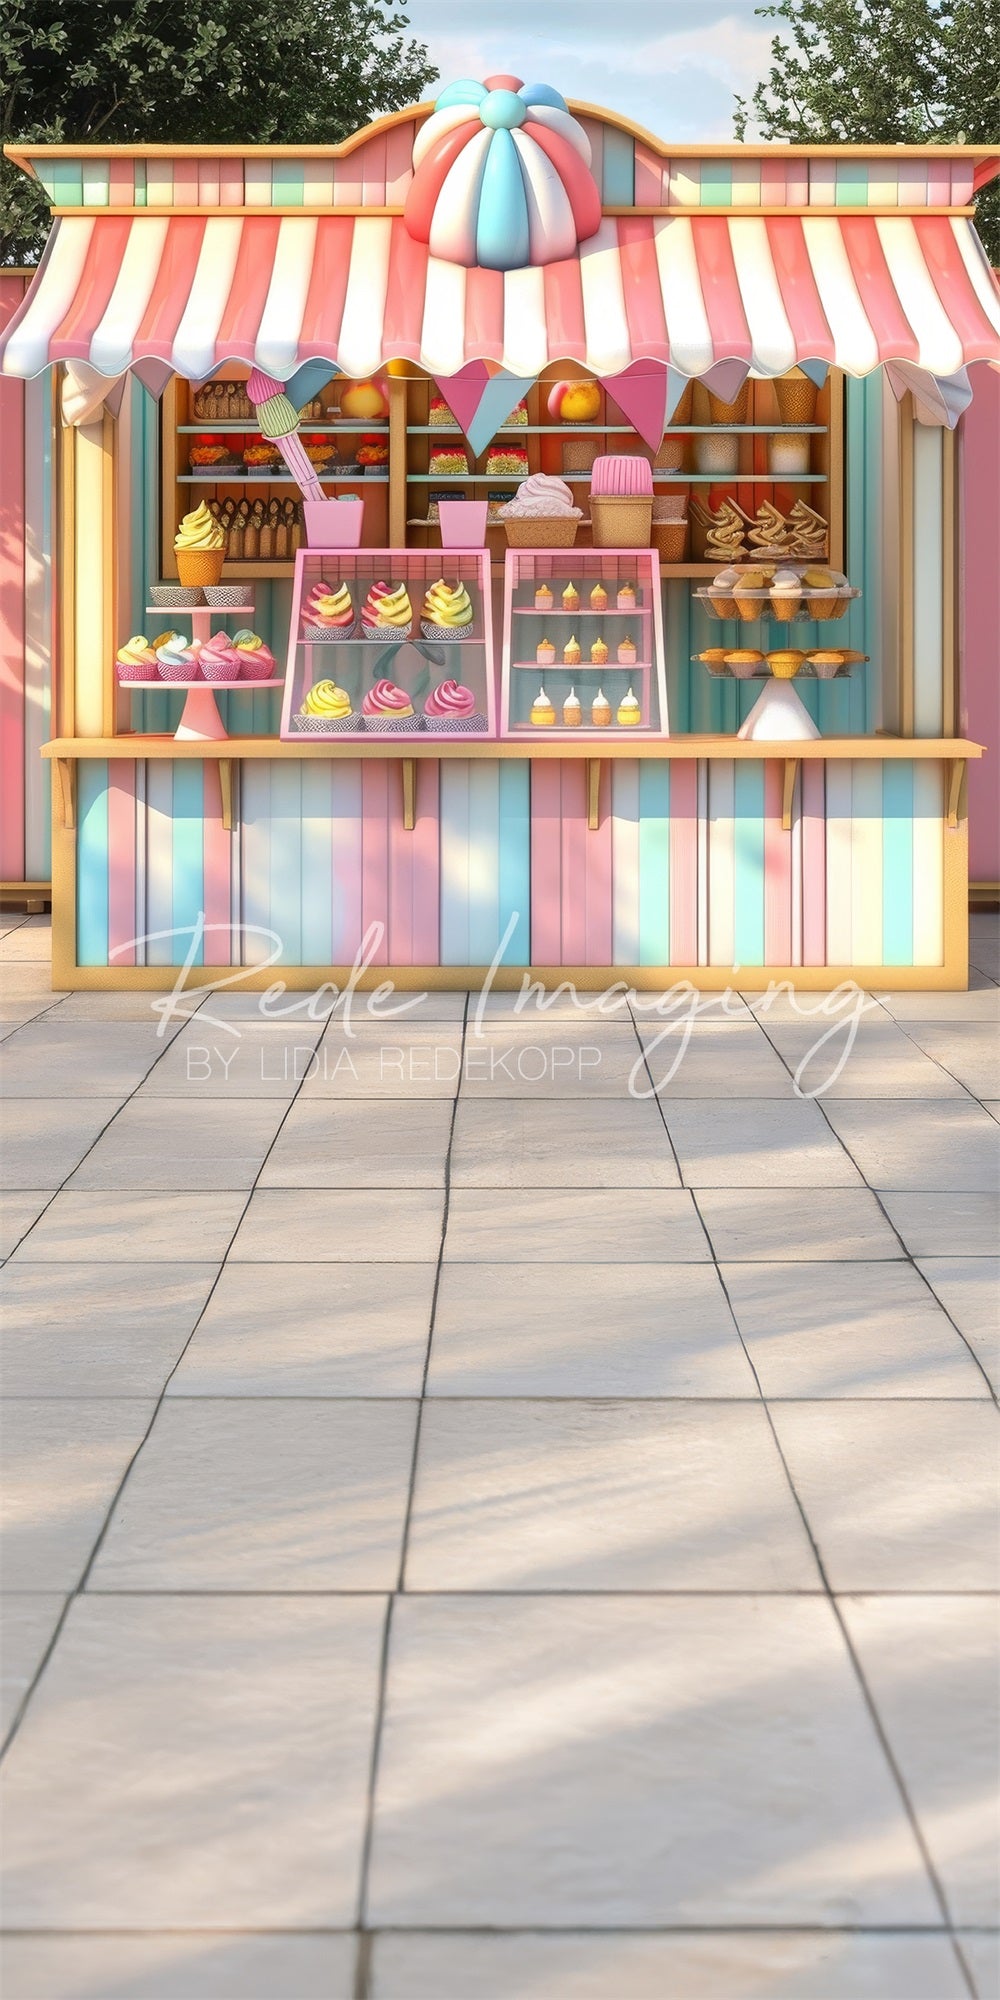 Sfondo del negozio di gelati dolci e colorati progettato da Lidia Redekopp